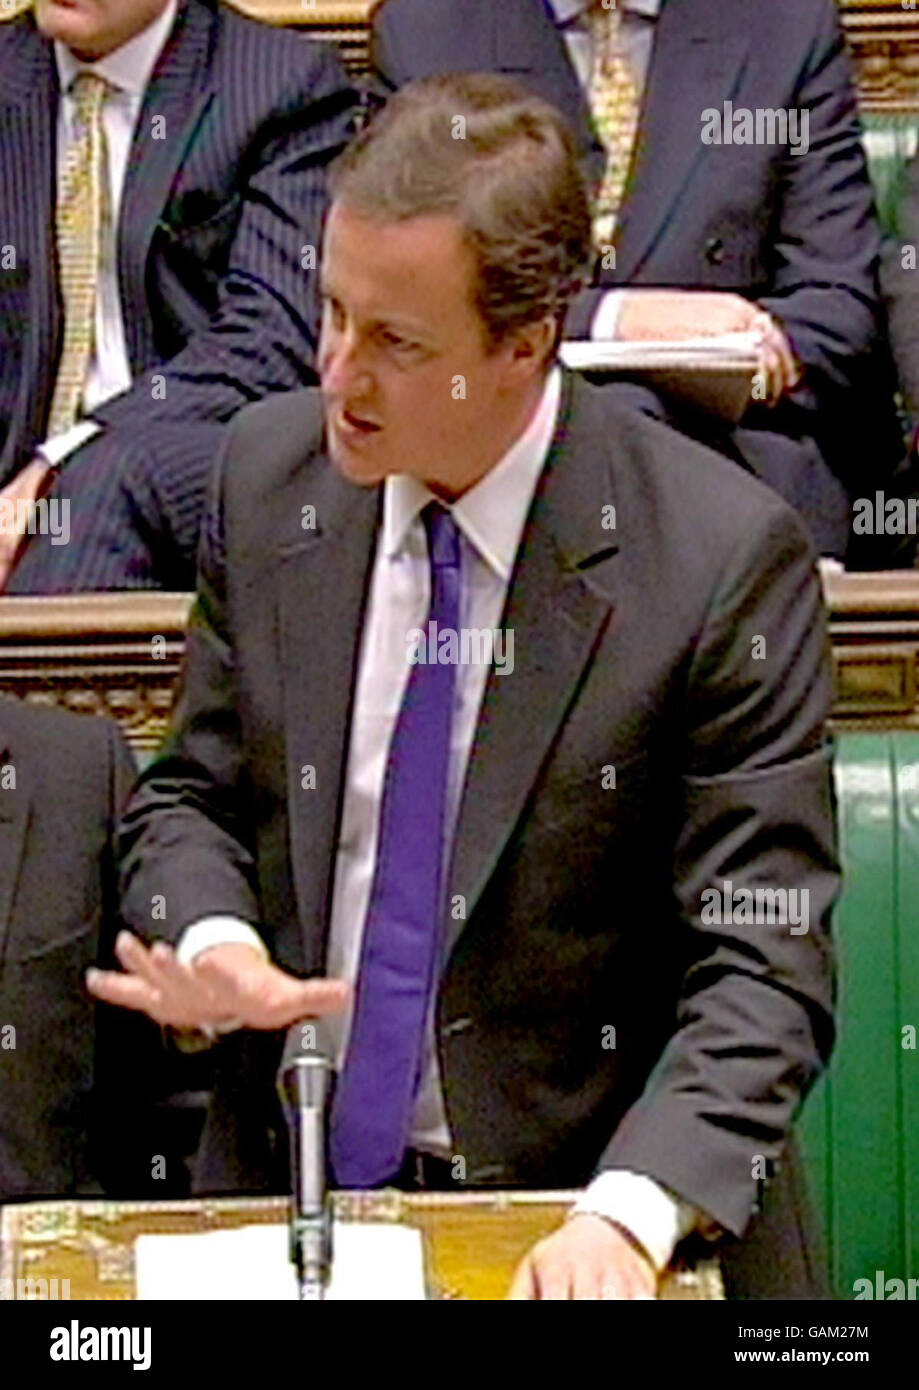 Il leader della Tory David Cameron ha fatto una foto alla Camera dei Comuni come primo ministro Gordon Brown oggi si è impegnato a intraprendere qualsiasi azione fosse necessaria per mantenere la stabilità finanziaria in un momento di crescente turbolenza in tutto il mondo. Cameron oggi ha accusato il governo di non essersi preparato per la recessione, consentendo un aumento del deficit di bilancio - diventando il più grande dell'Europa occidentale. Foto Stock